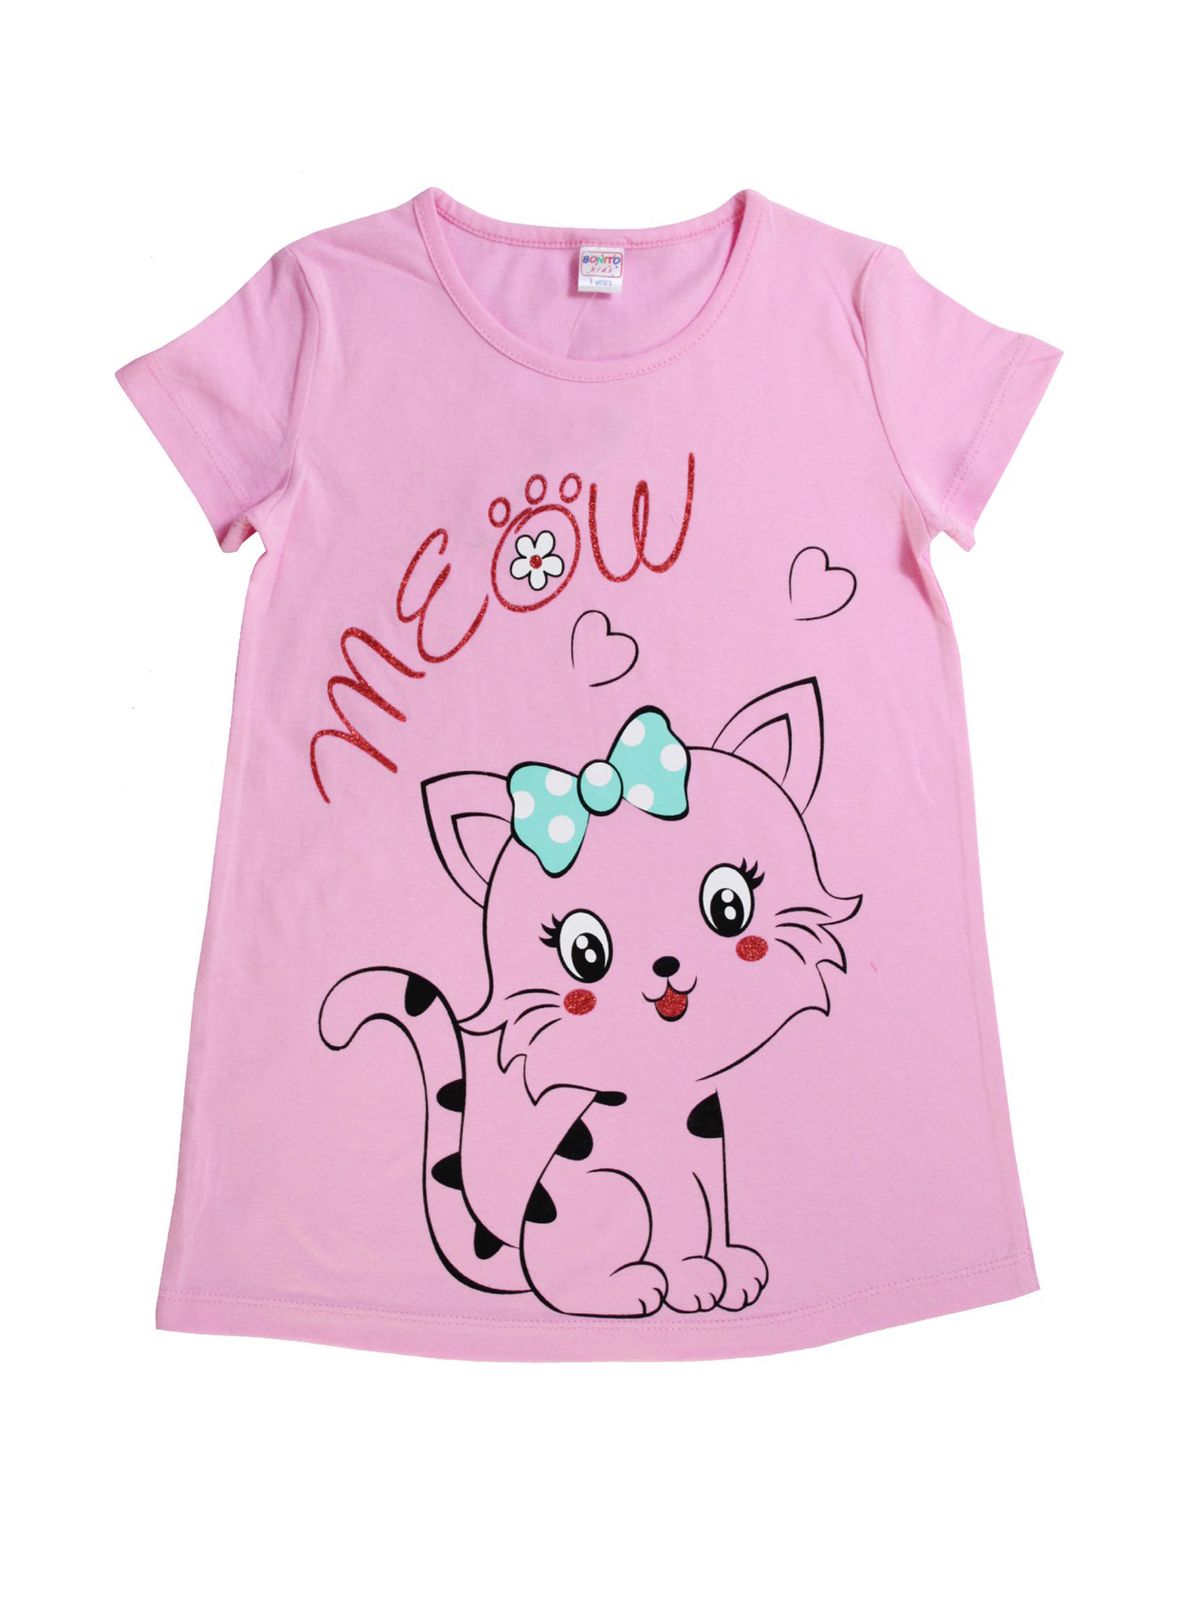 Ночная сорочка для девочек, Bonito, 6513-01, розовый, 110